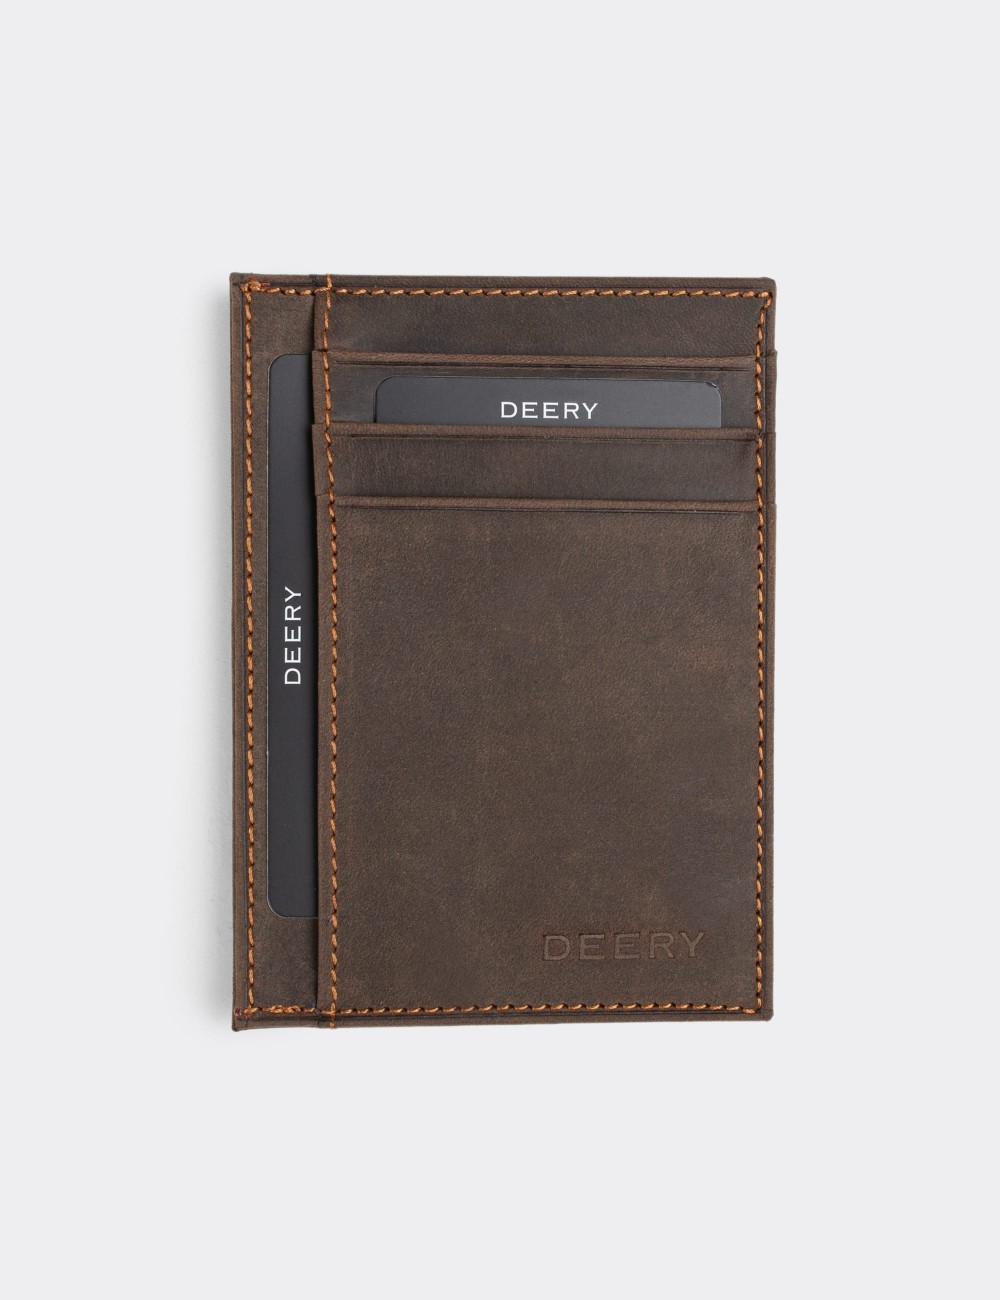  Leather Brown Men's Wallet - 0588CMKHVZ01